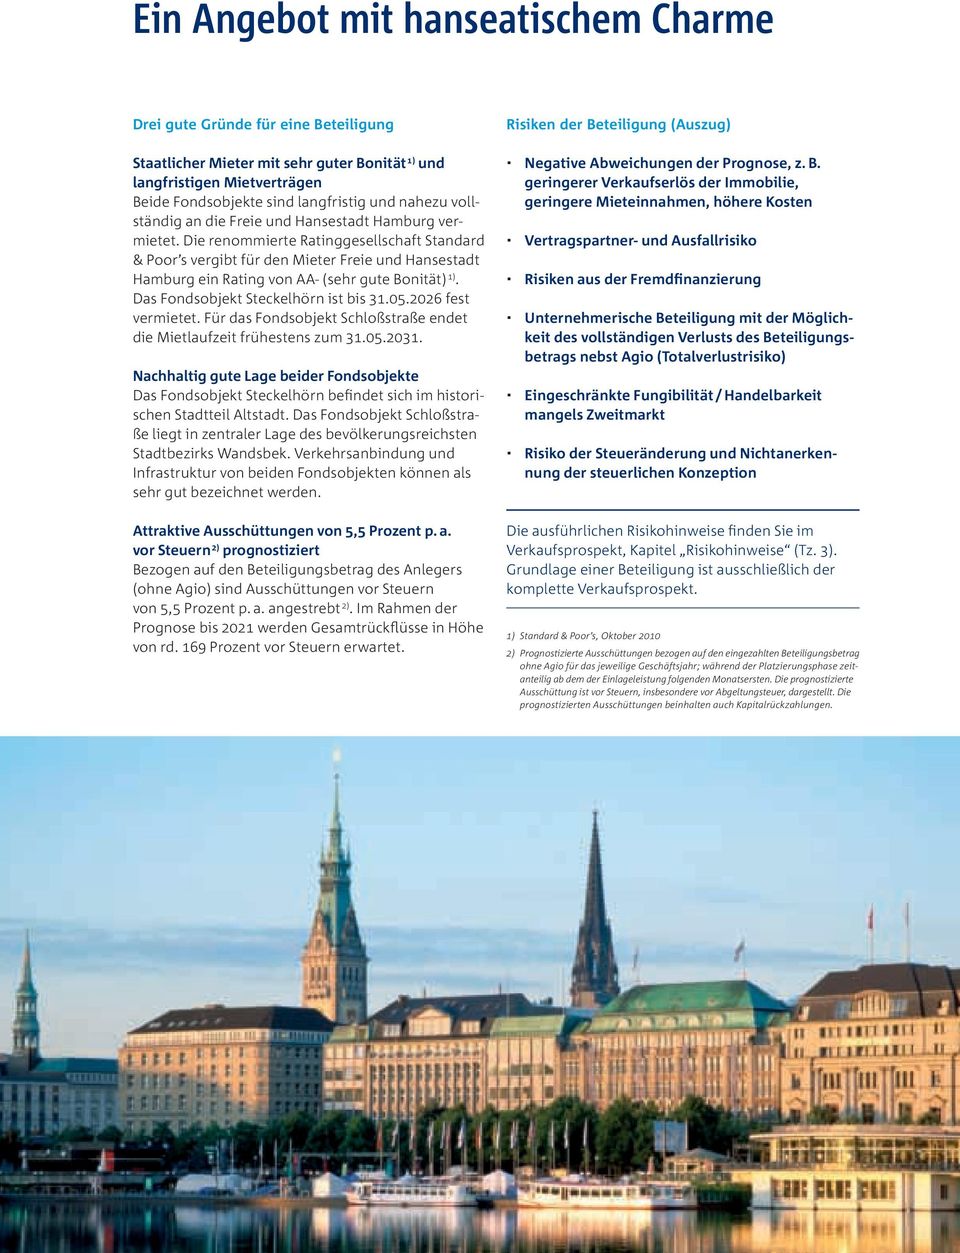 Die renommierte Ratinggesellschaft Standard & Poor s vergibt für den Mieter Freie und Hansestadt Hamburg ein Rating von AA- (sehr gute Bonität) 1). Das Fondsobjekt Steckelhörn ist bis 31.05.